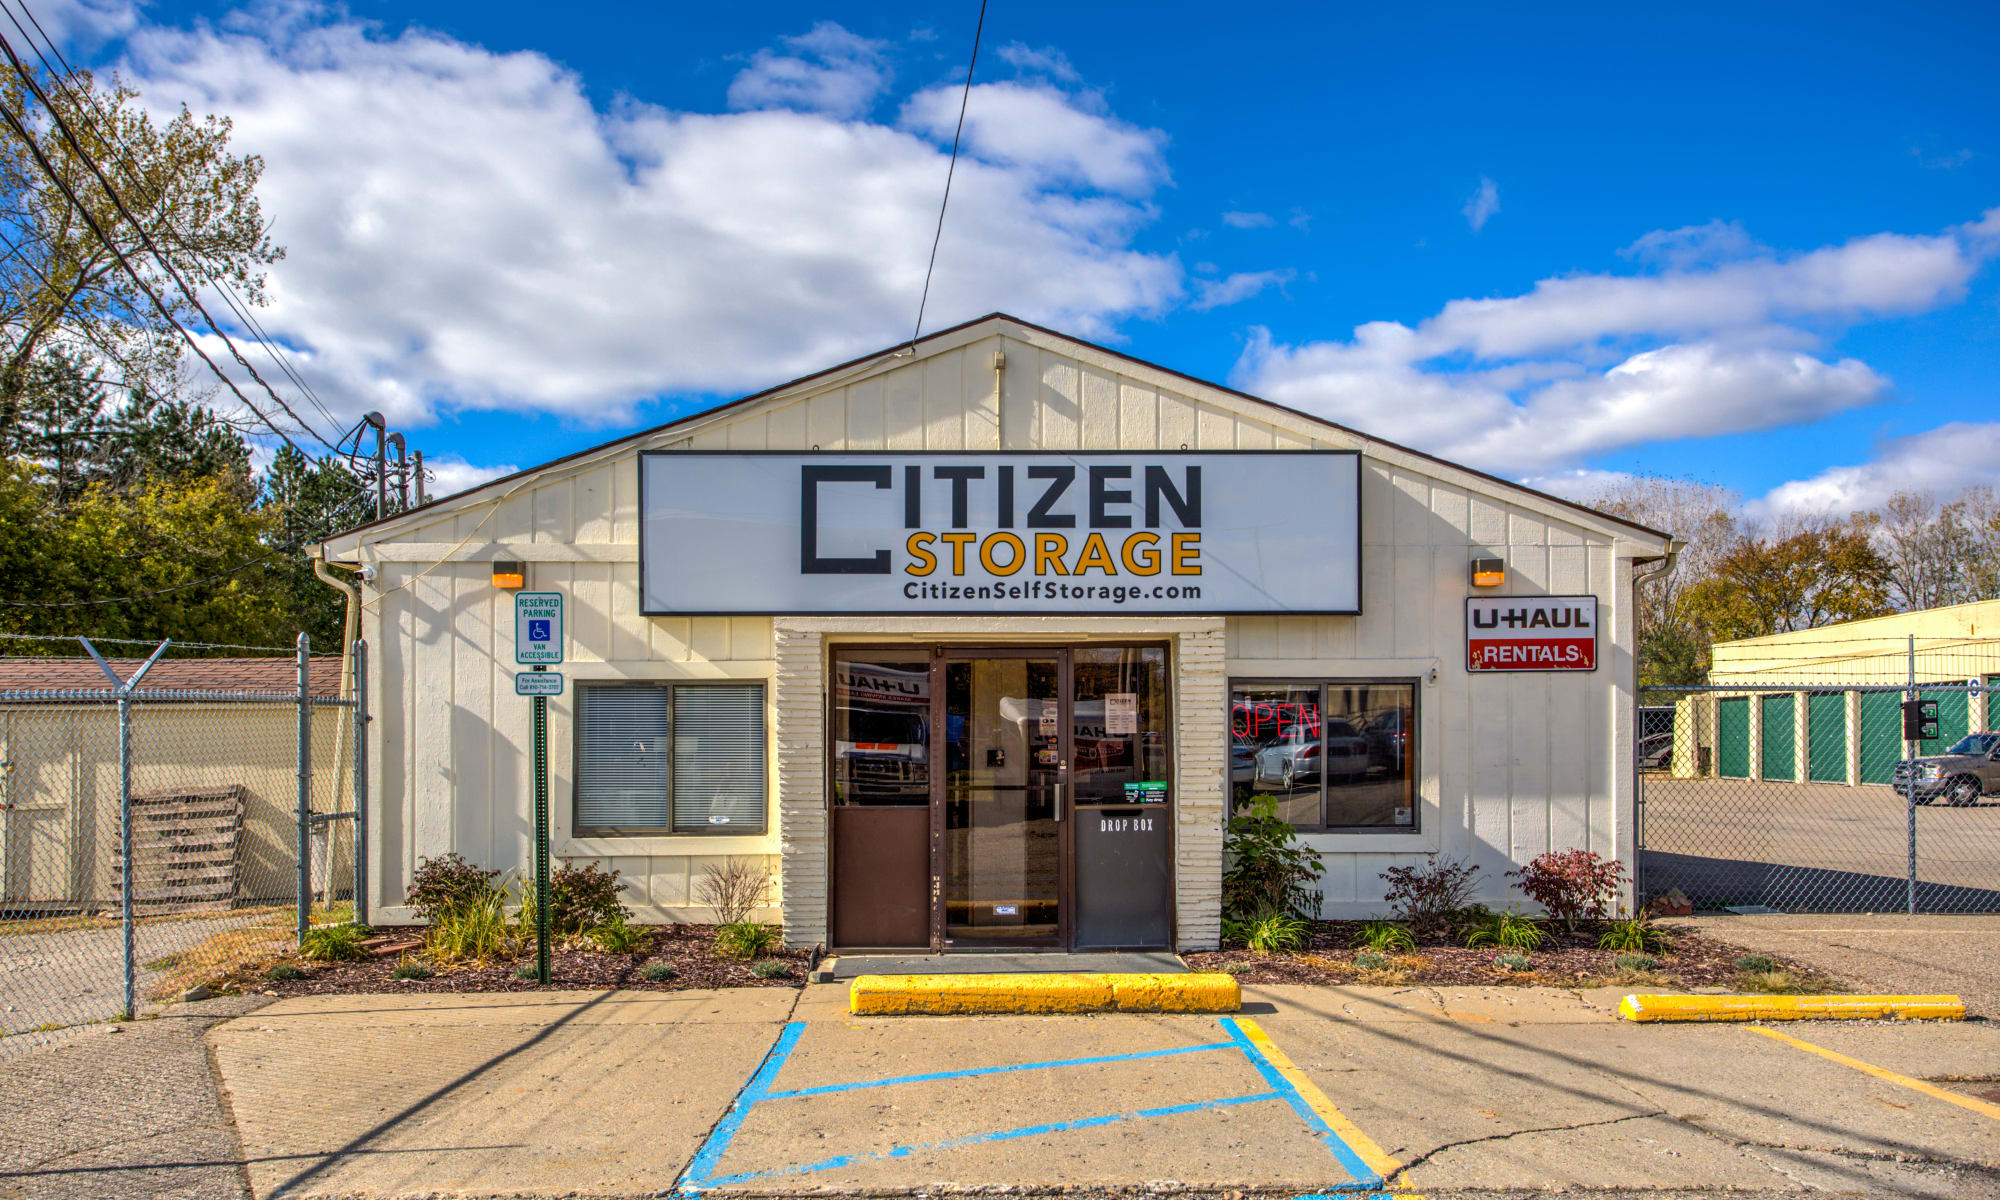 Self Storage at Citizen Storage in Fenton, Michigan